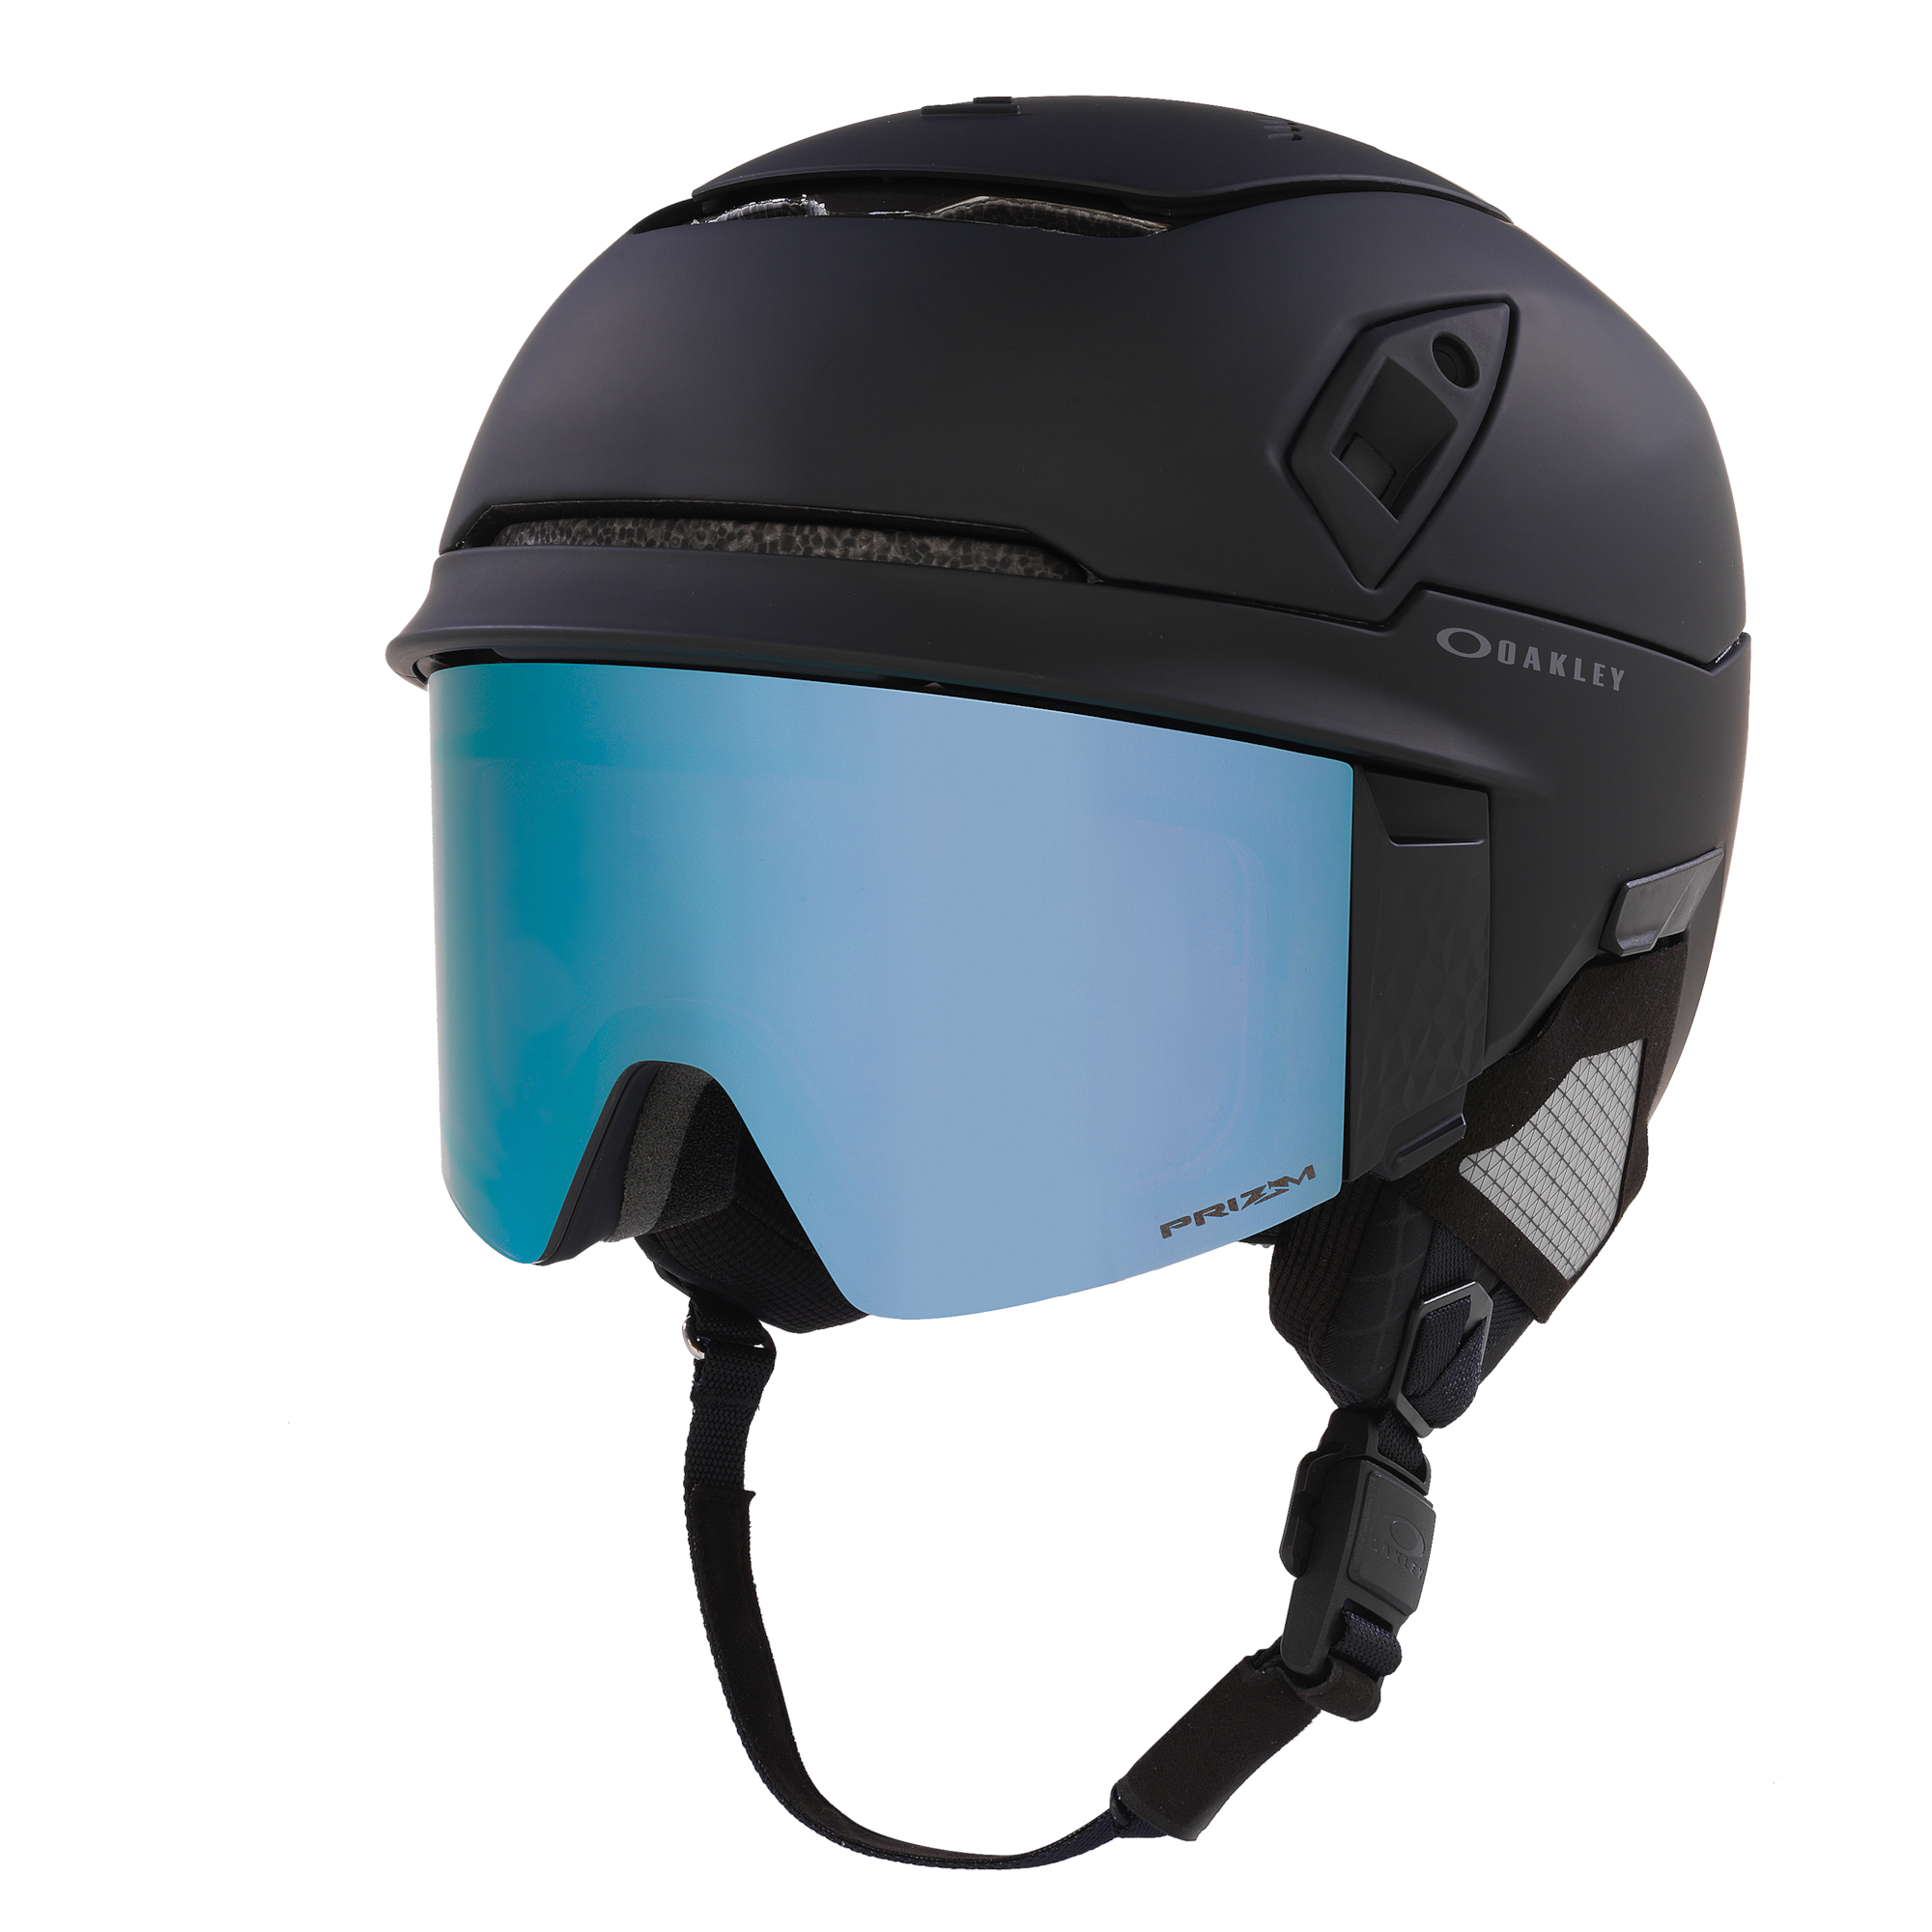 Mod7 Snow Helmet